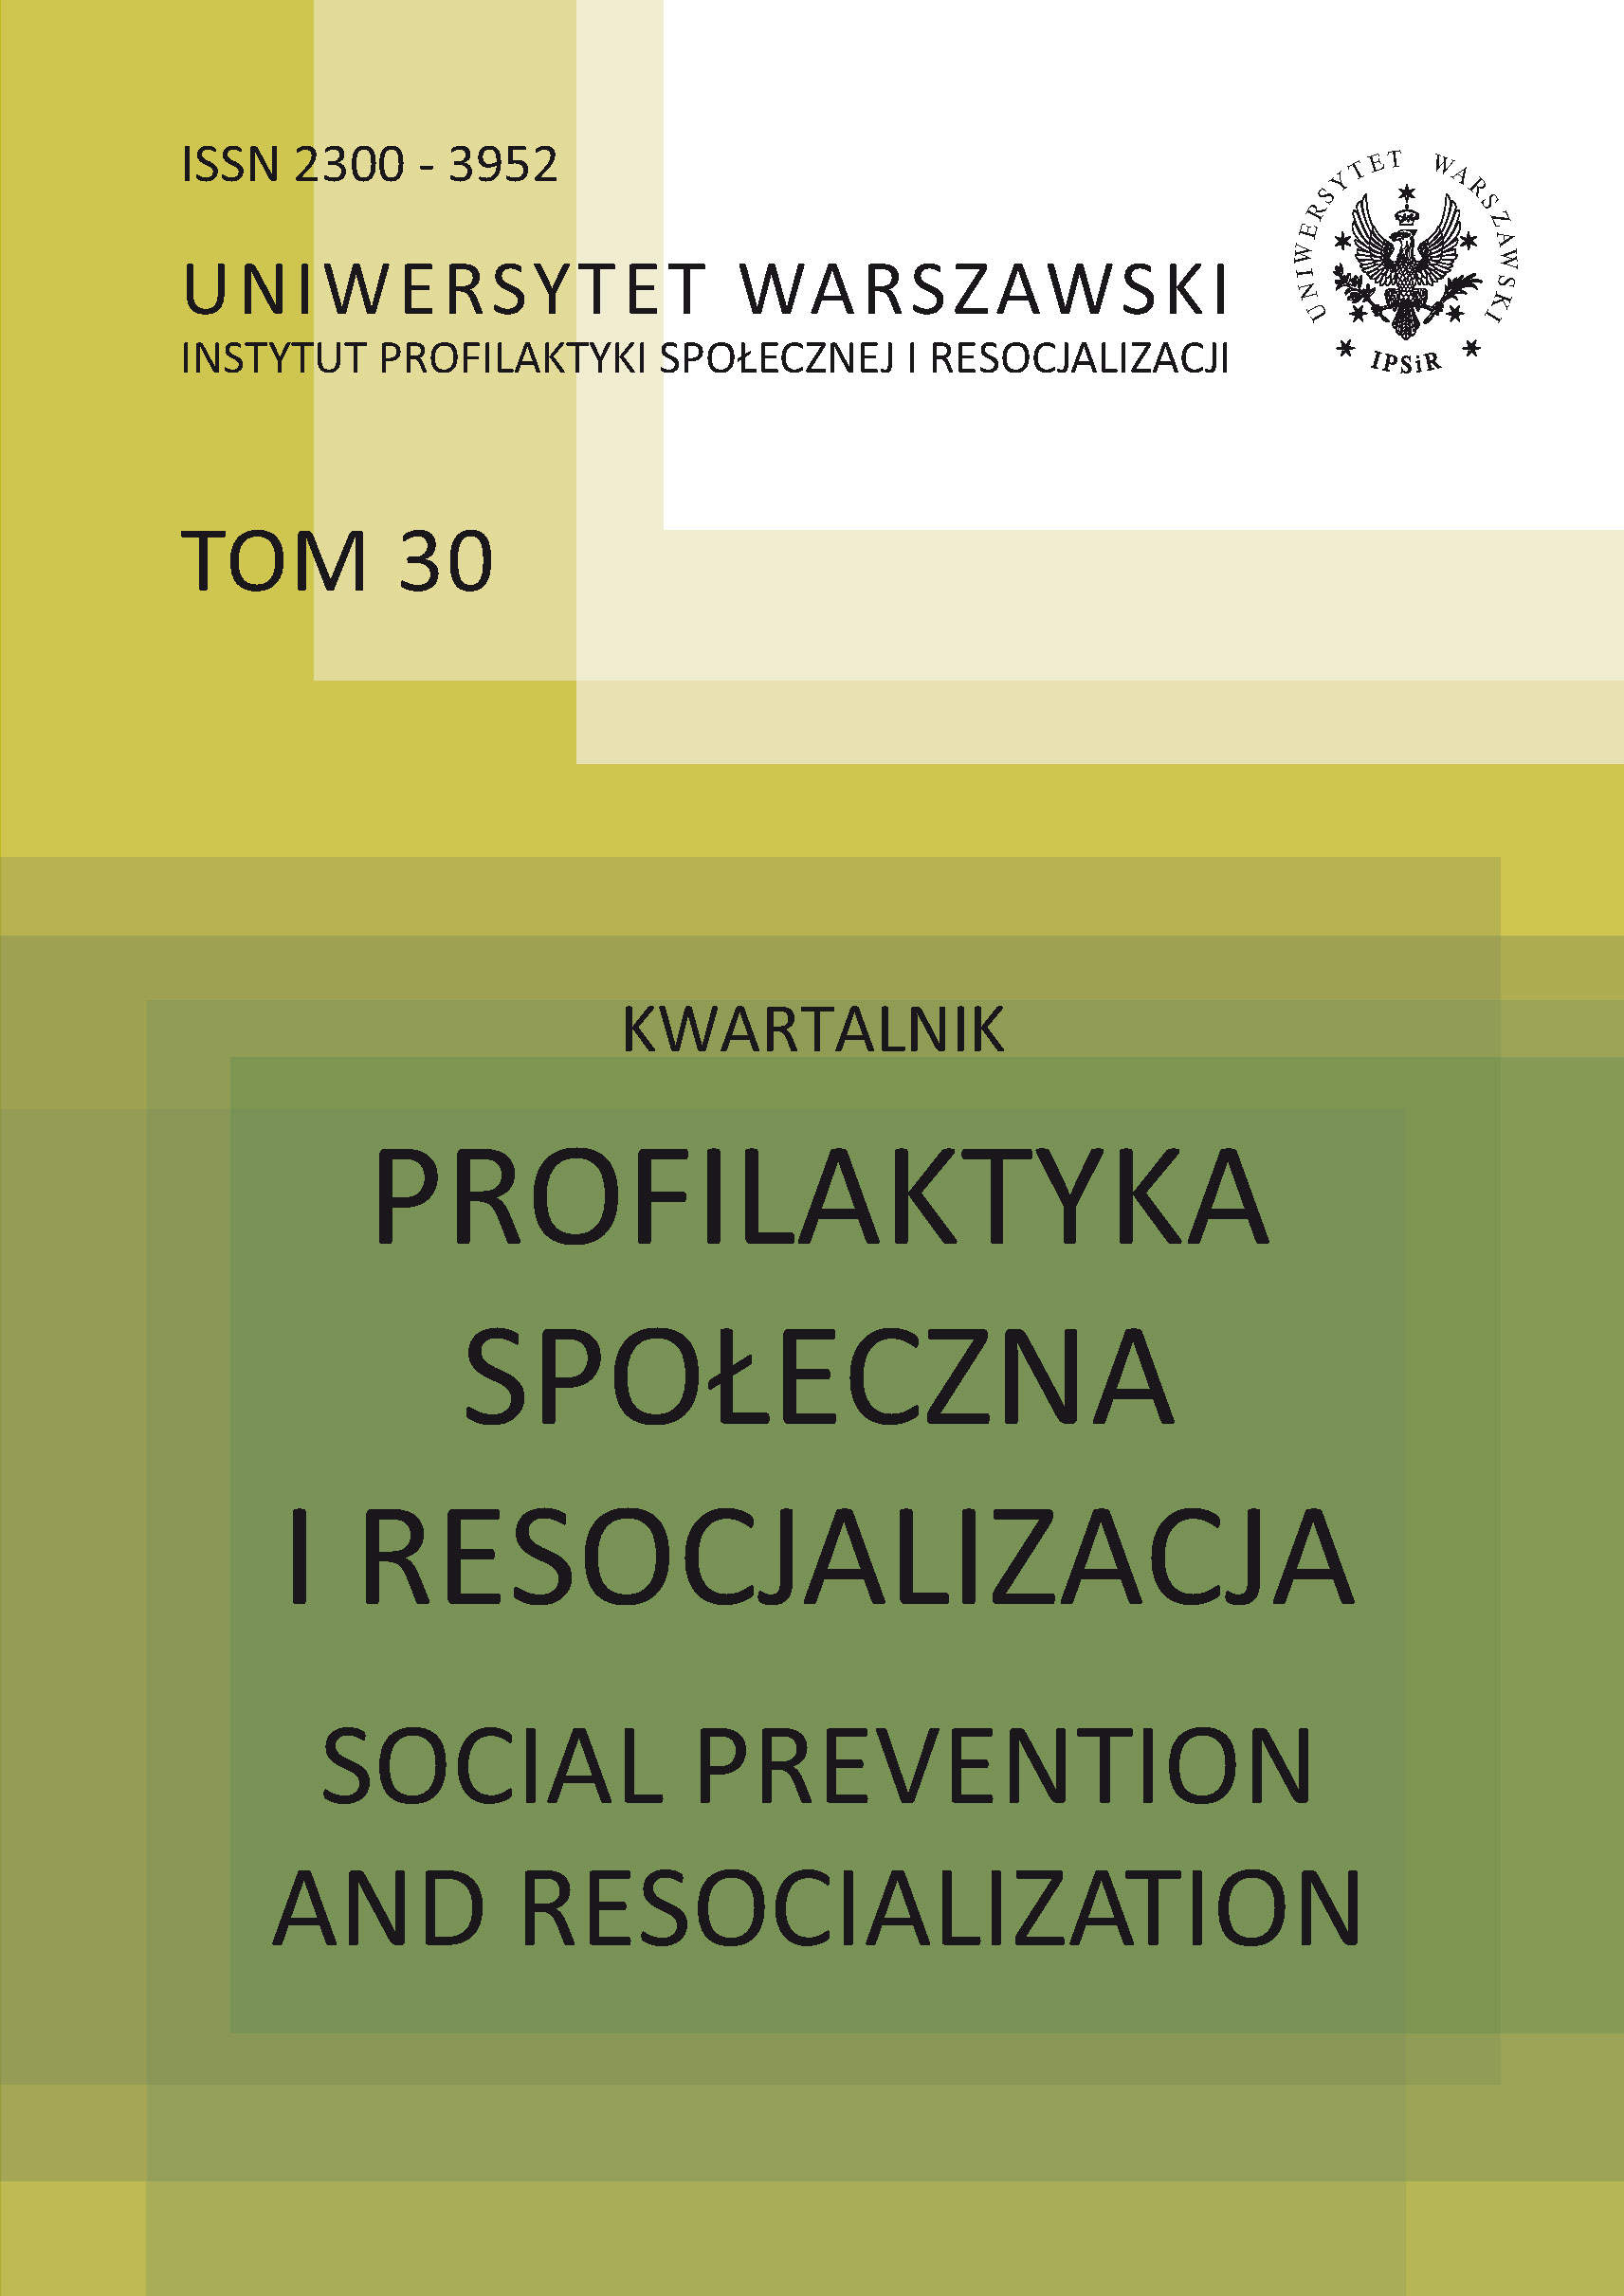 Sprawozdanie z Ogólnopolskiej Konferencji Naukowej „Między bezpieczeństwem a wolnością. Profilaktyka społeczna jako zadanie polityk publicznych”